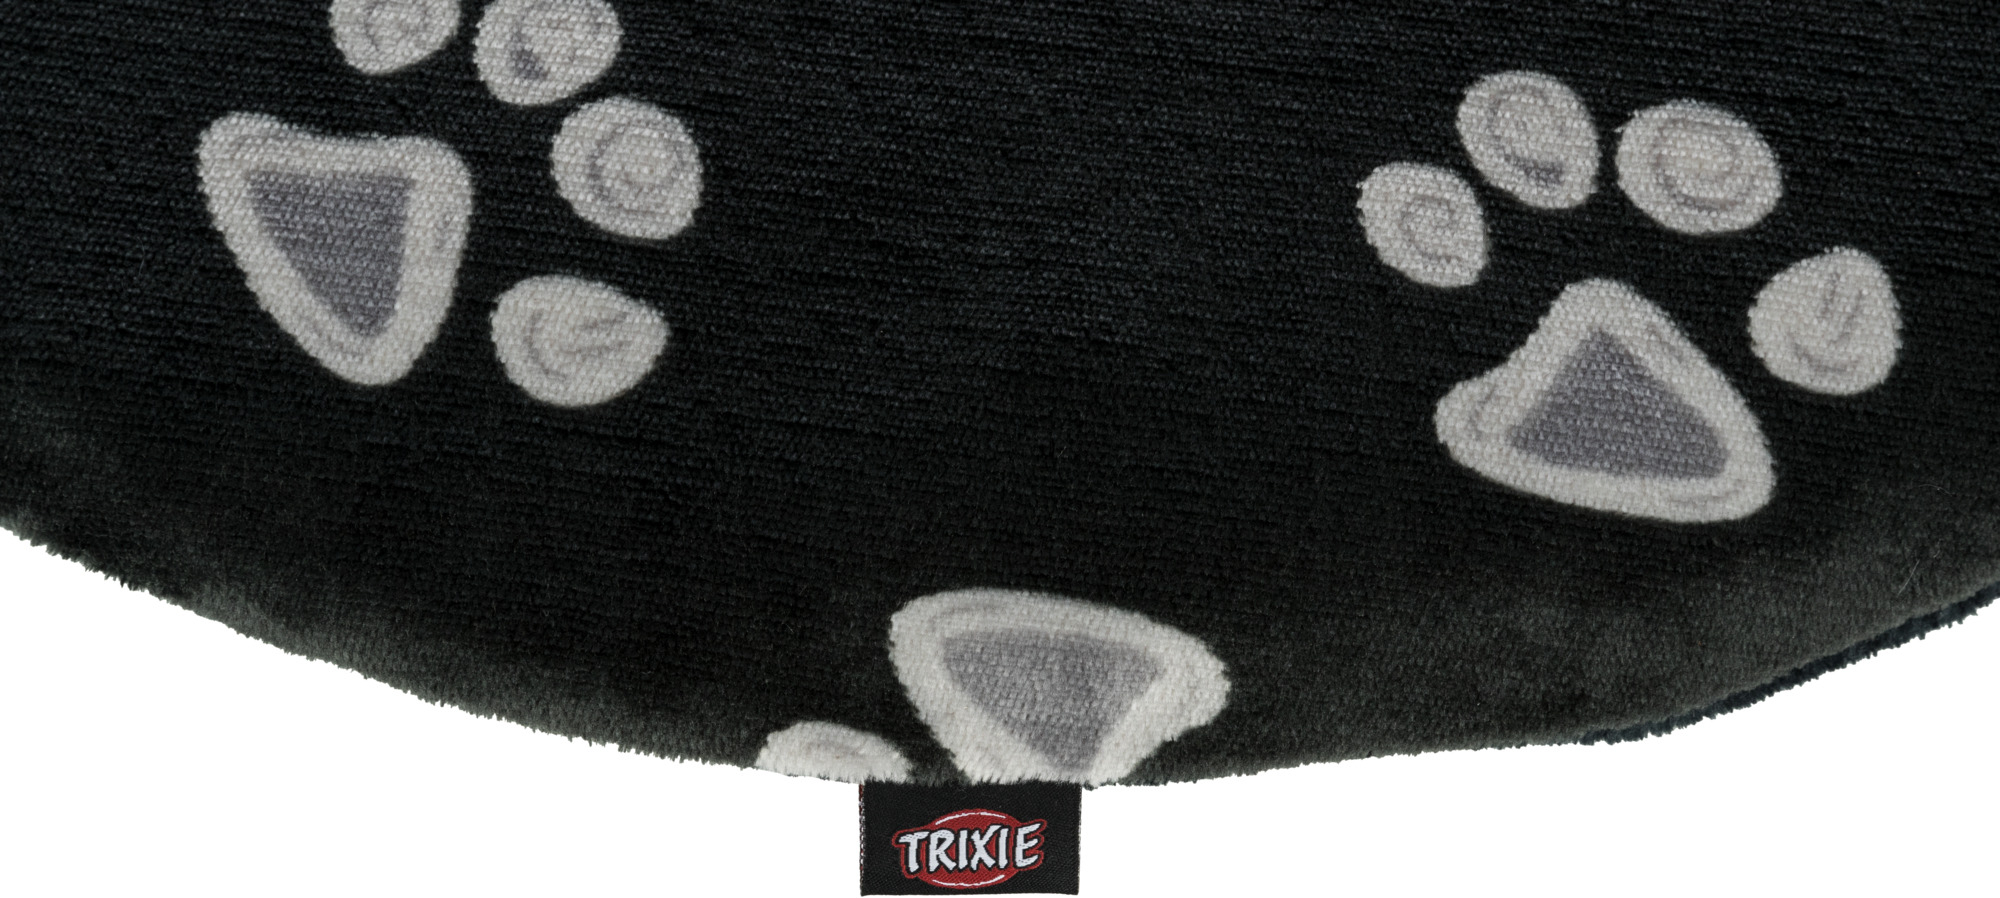 Almofada oval Trixie Jimmy - vários tamanhos disponíveis